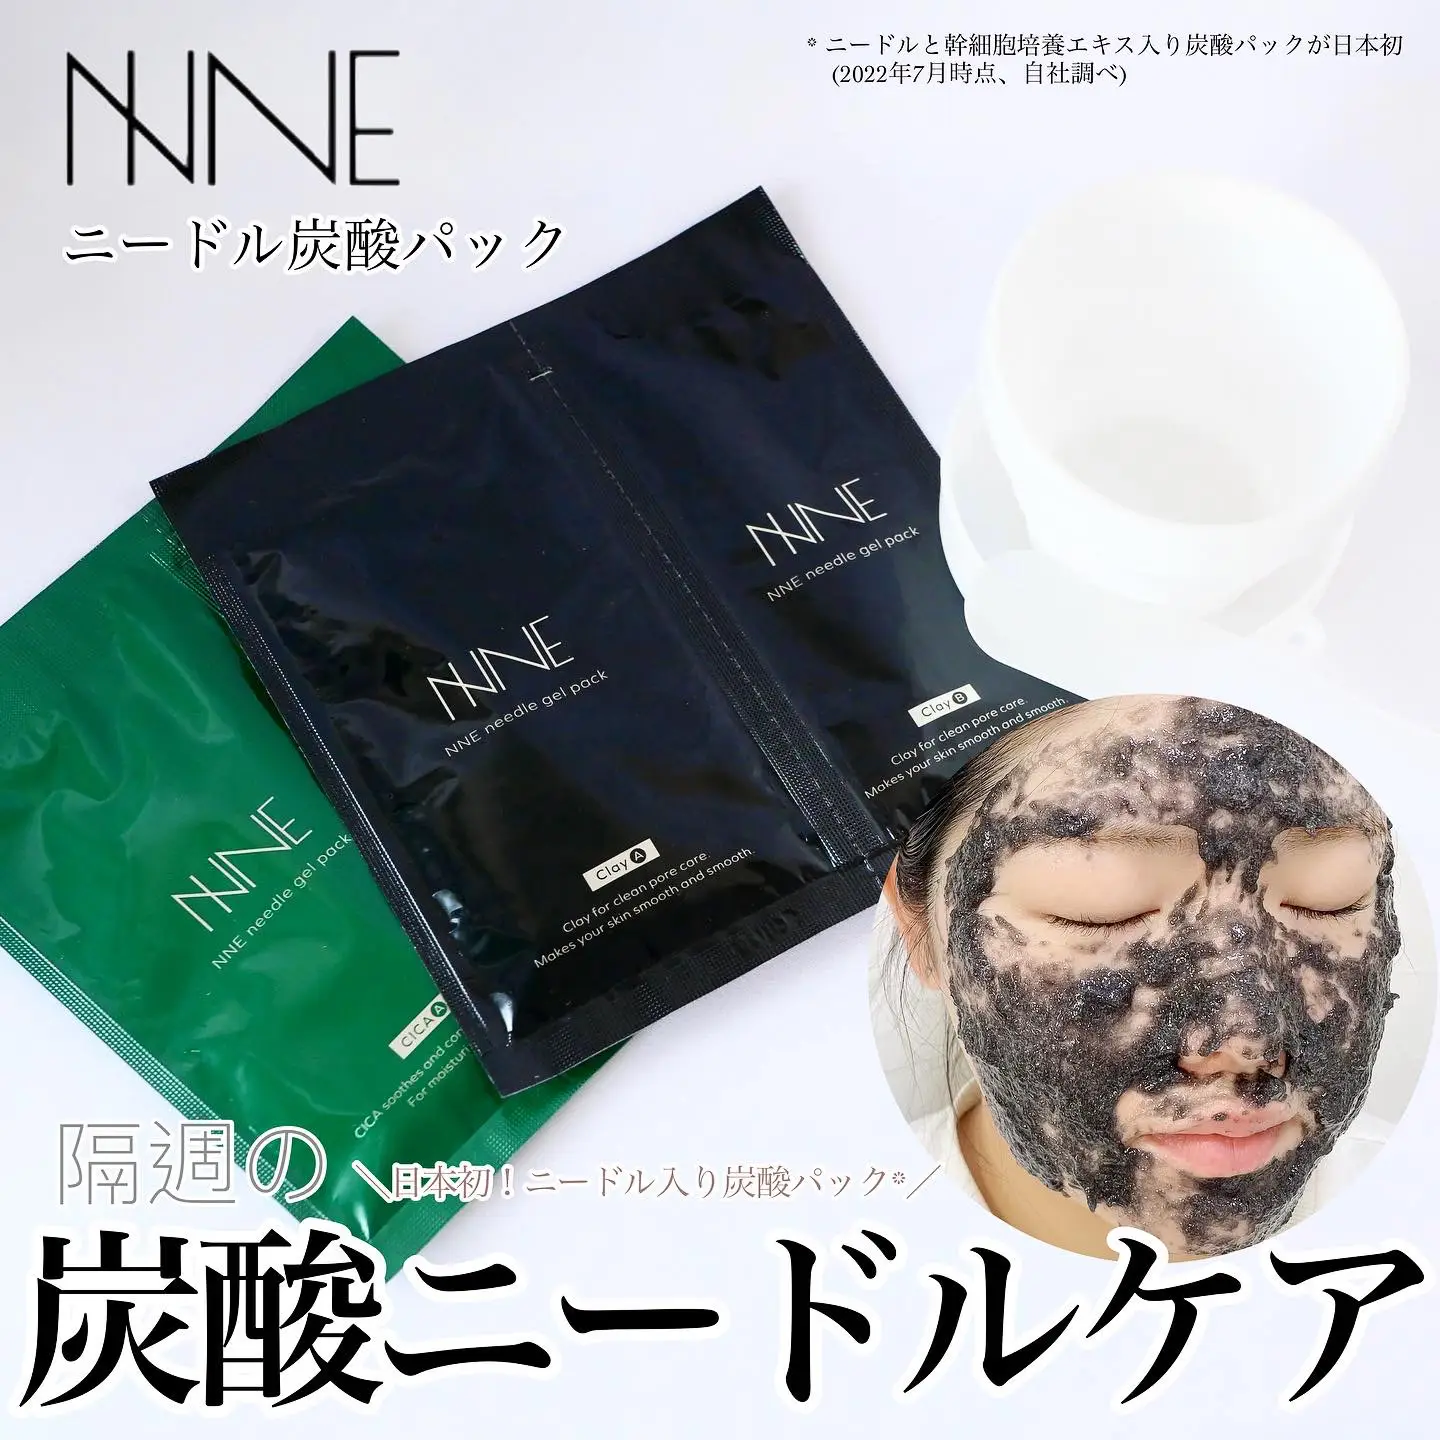 販売本物NNE ニードル炭酸パック(2ヶ月分) パック・フェイスマスク